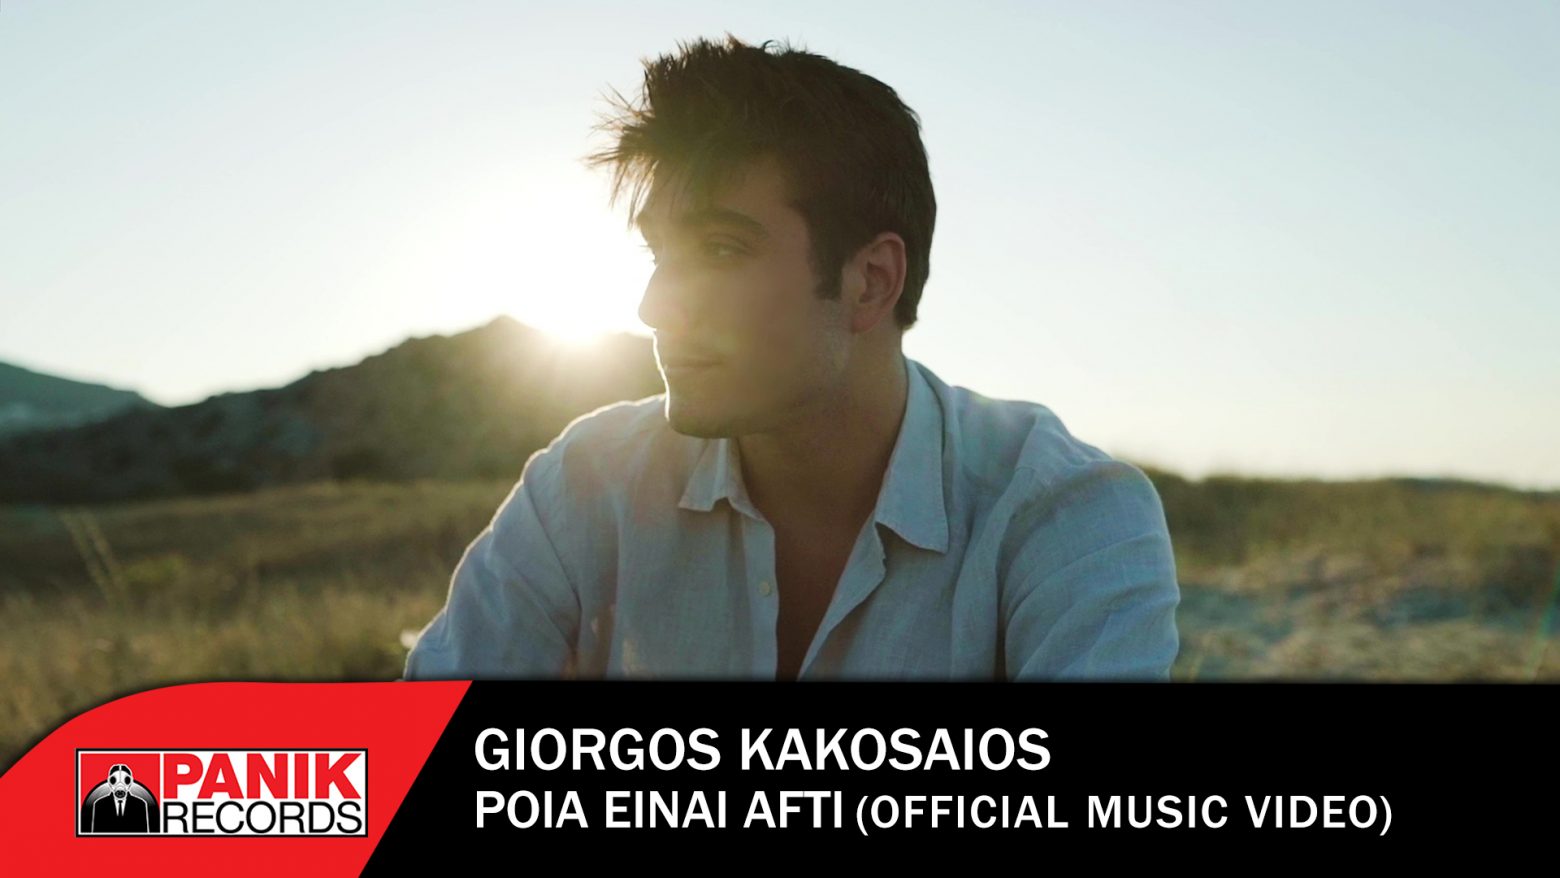 Γιώργος Κακοσαίος: «Ποια Είναι Αυτή» το νέο καλοκαιρινό του hit και music video